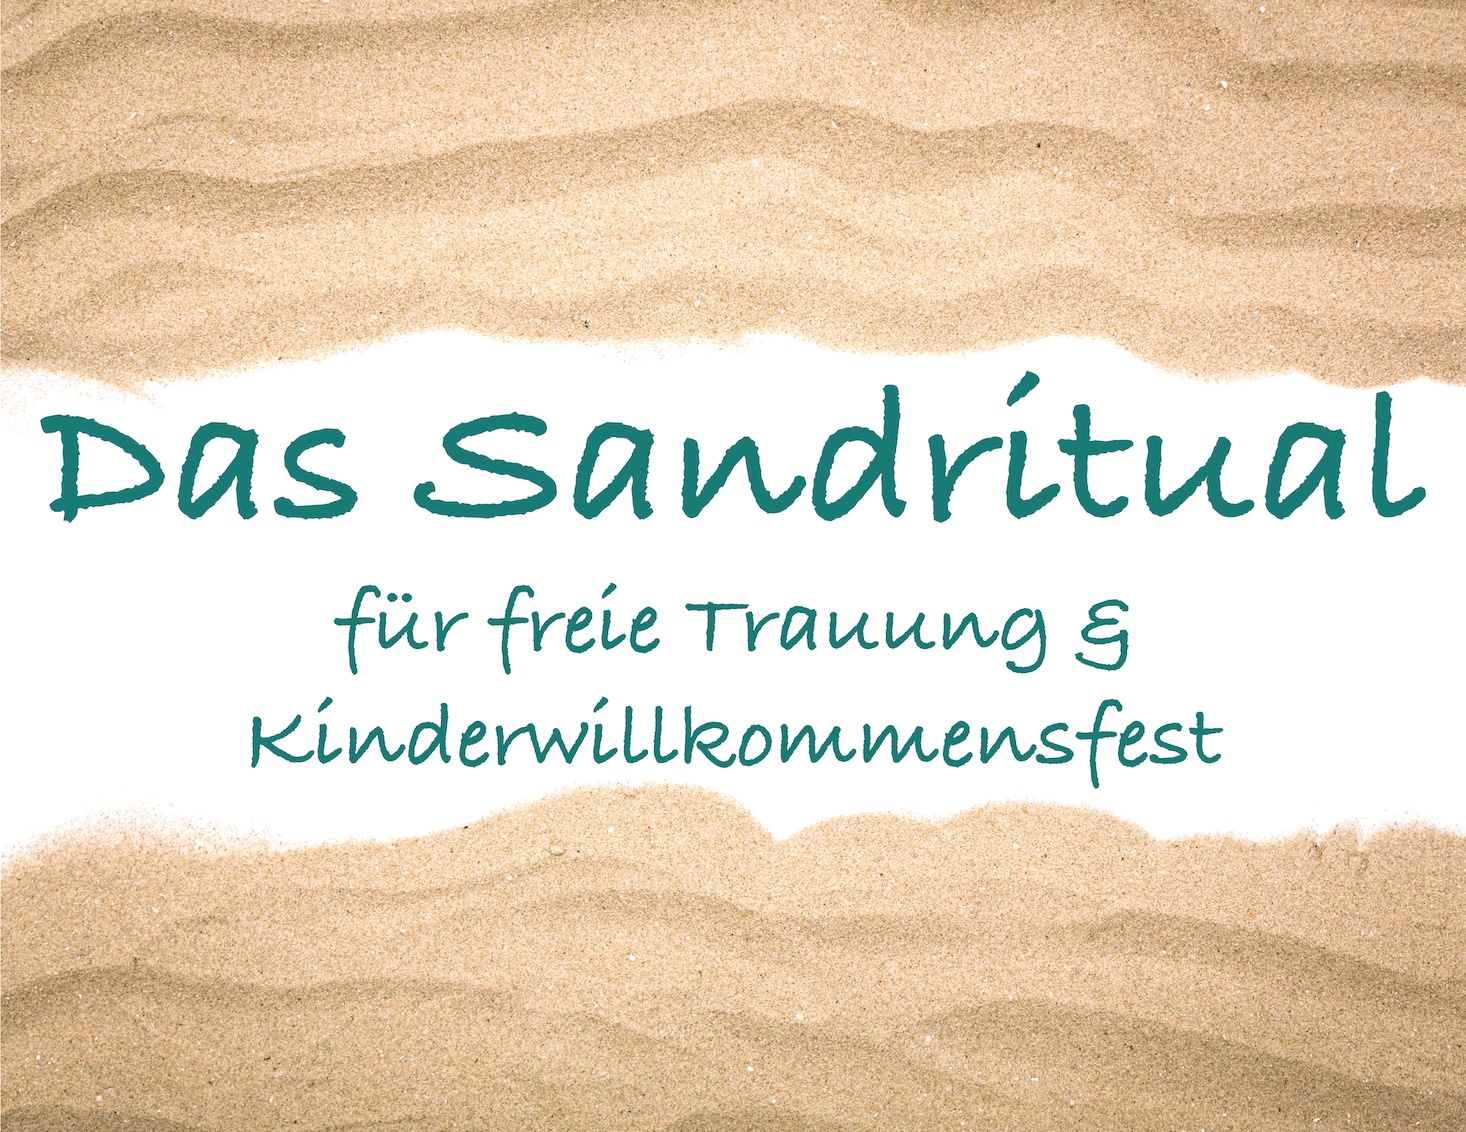 Sandzeremonie für freie Trauung und Kinderwillkommensfest – Der Klassiker unter den Ritualen